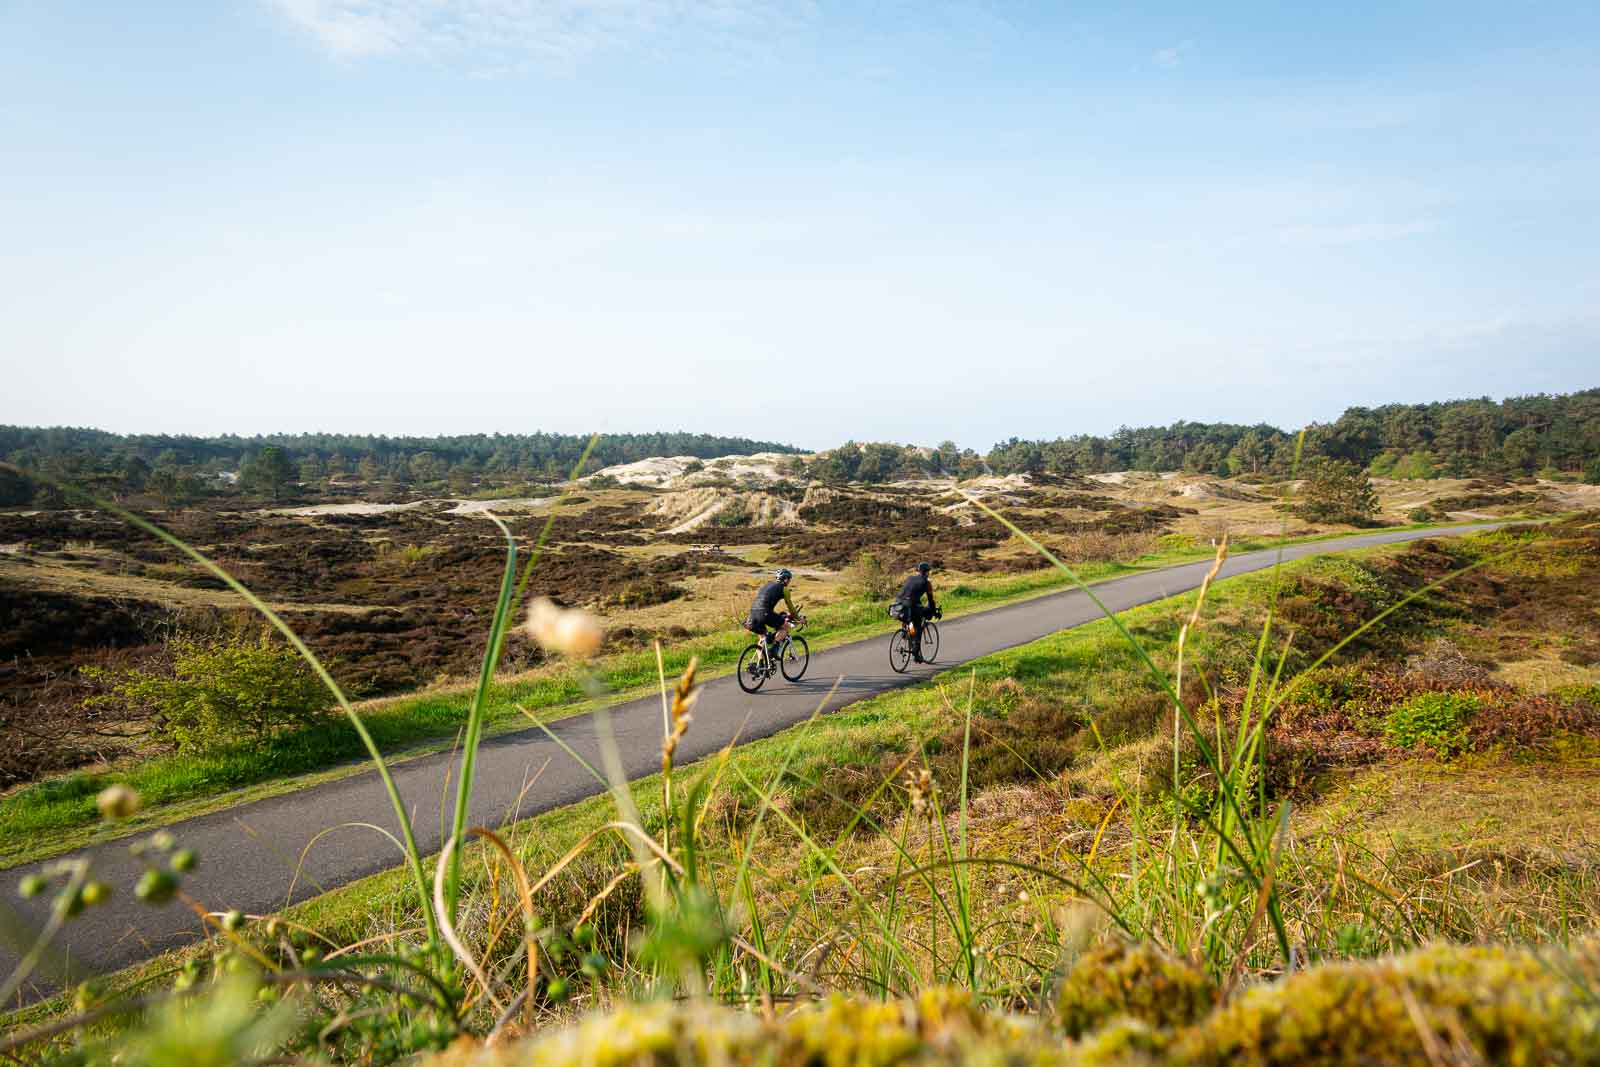 Twee fietsers die meedoen aan de Race om Nederland rijden over een weg door de duinen.